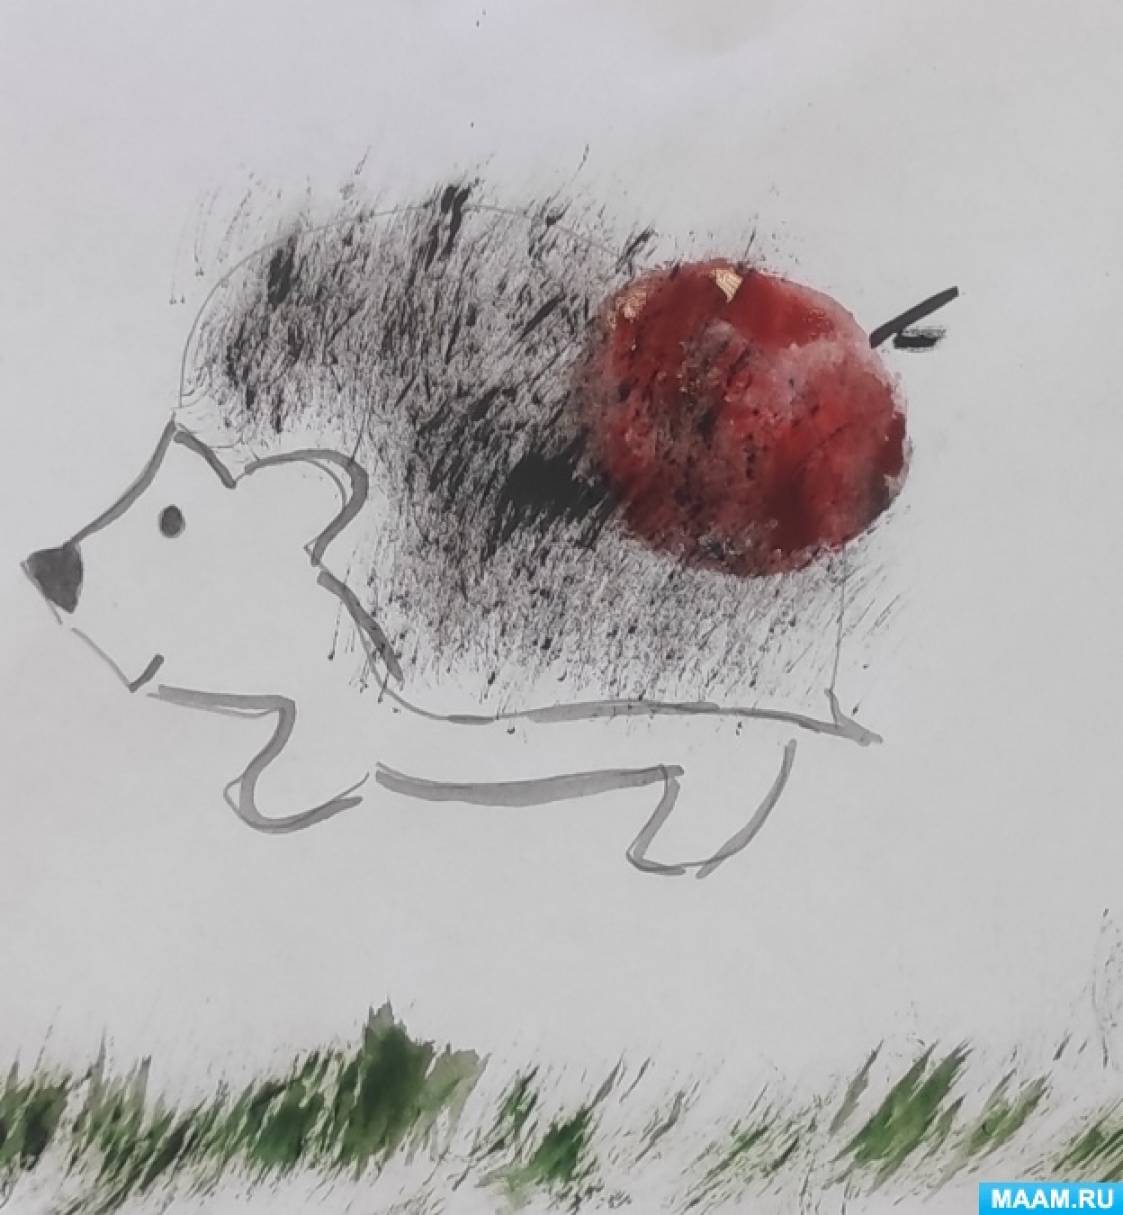 Конспект занятия по рисованию в первой младшей группе «Ёжик с яблоком»